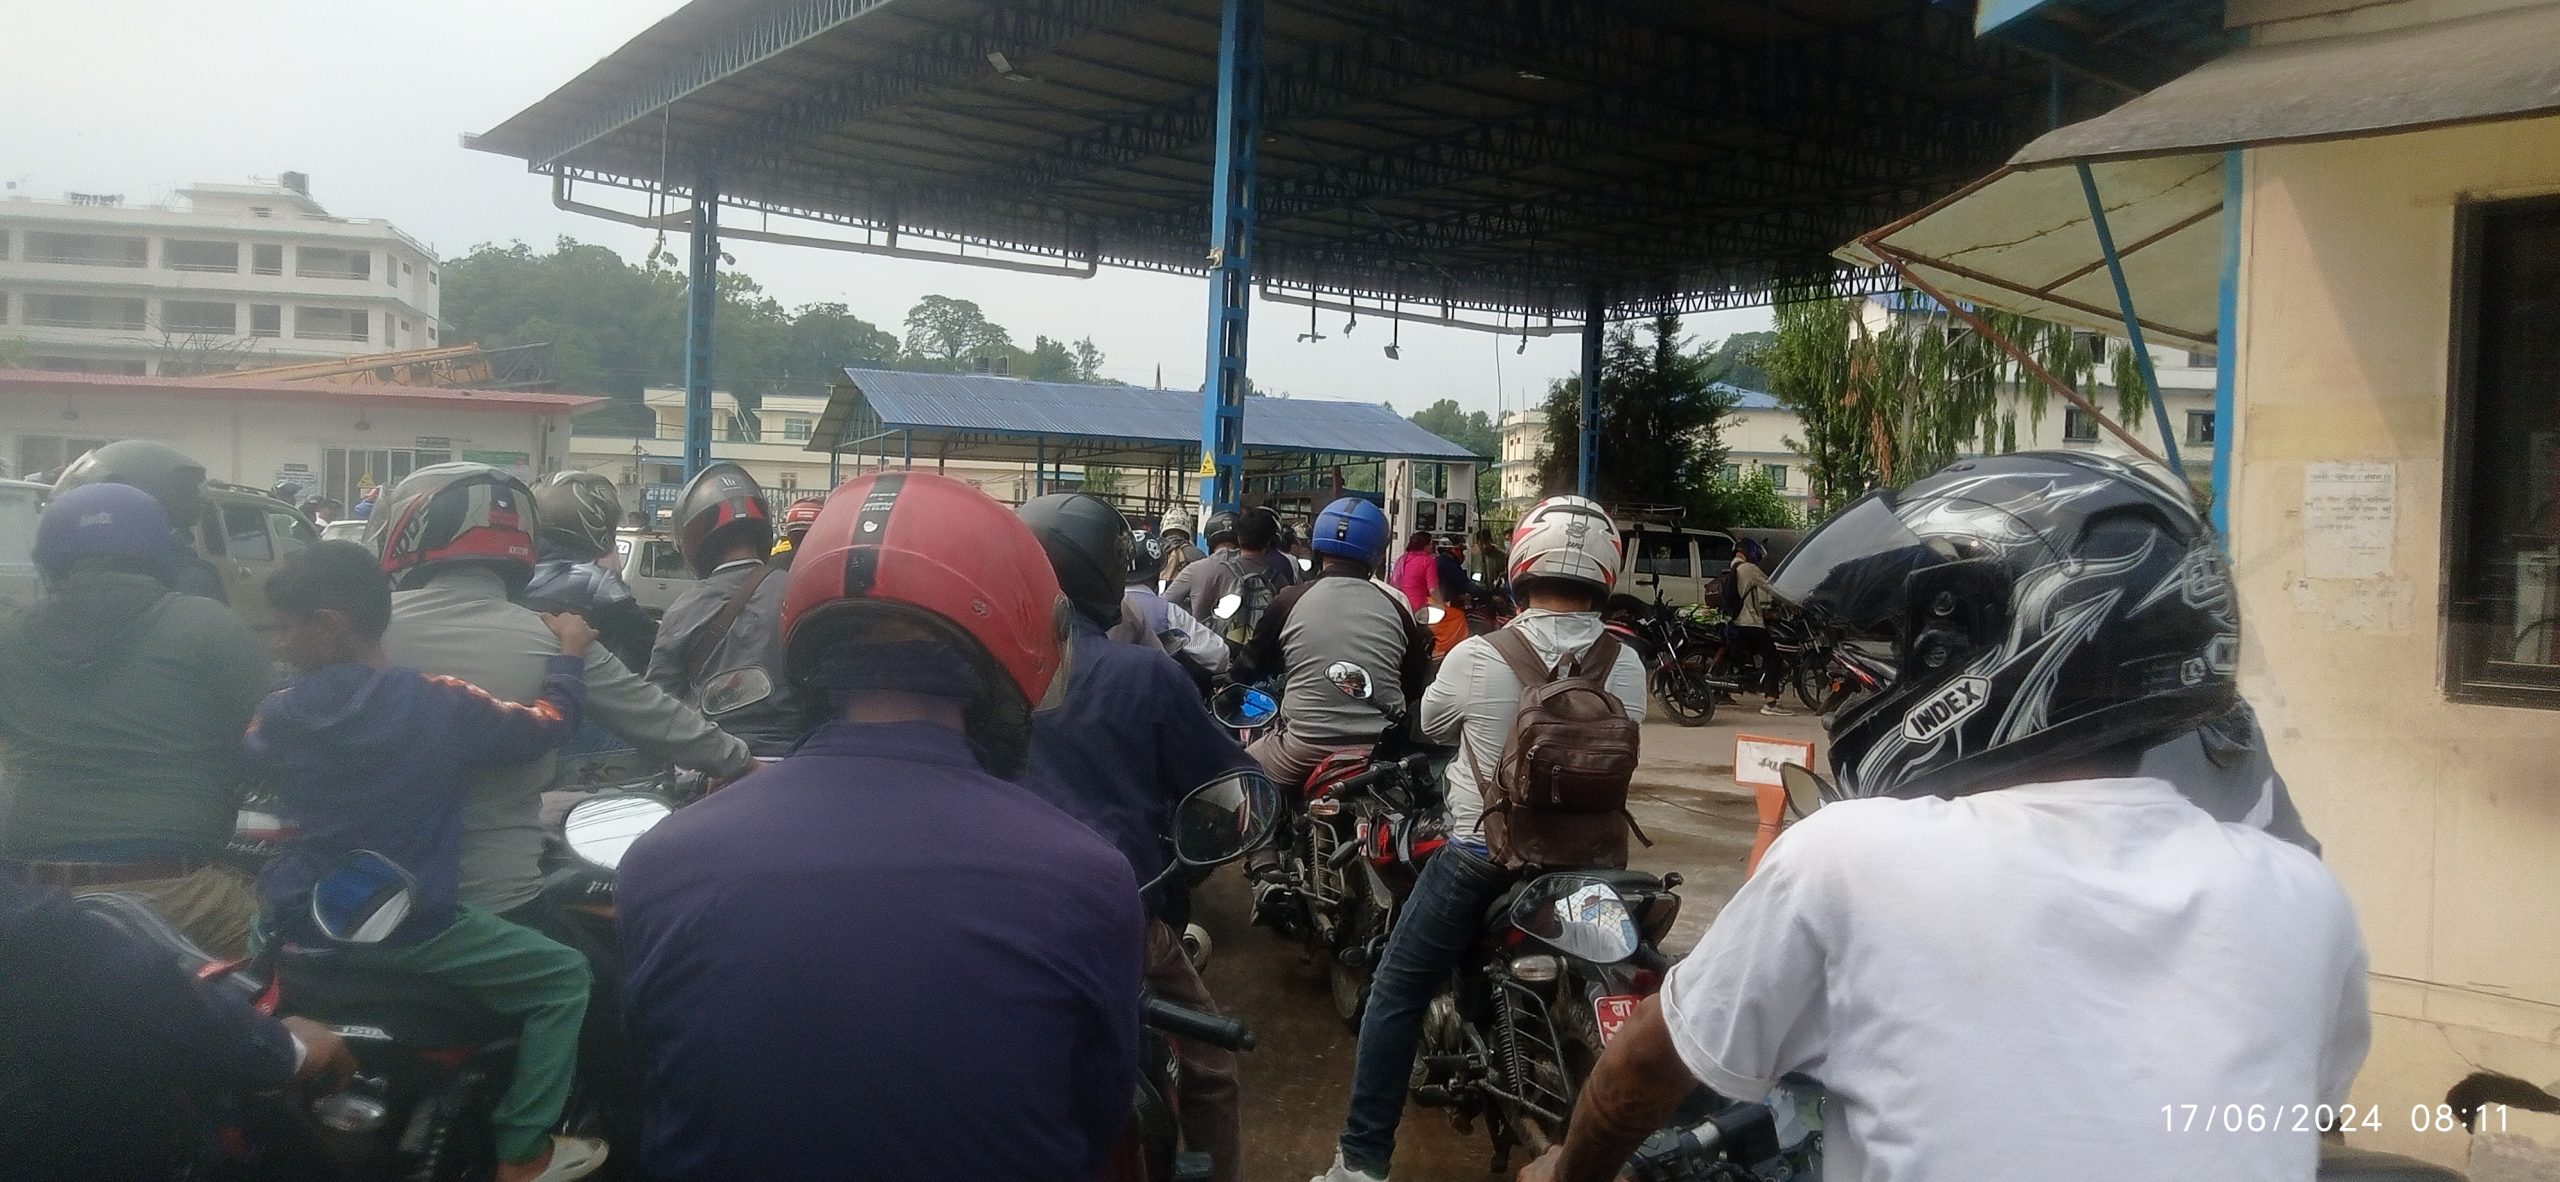 काठमाडौंका निजि पेट्रोल पम्प बन्द, सरकारी पम्पमा इन्धन भर्नेको लाइन